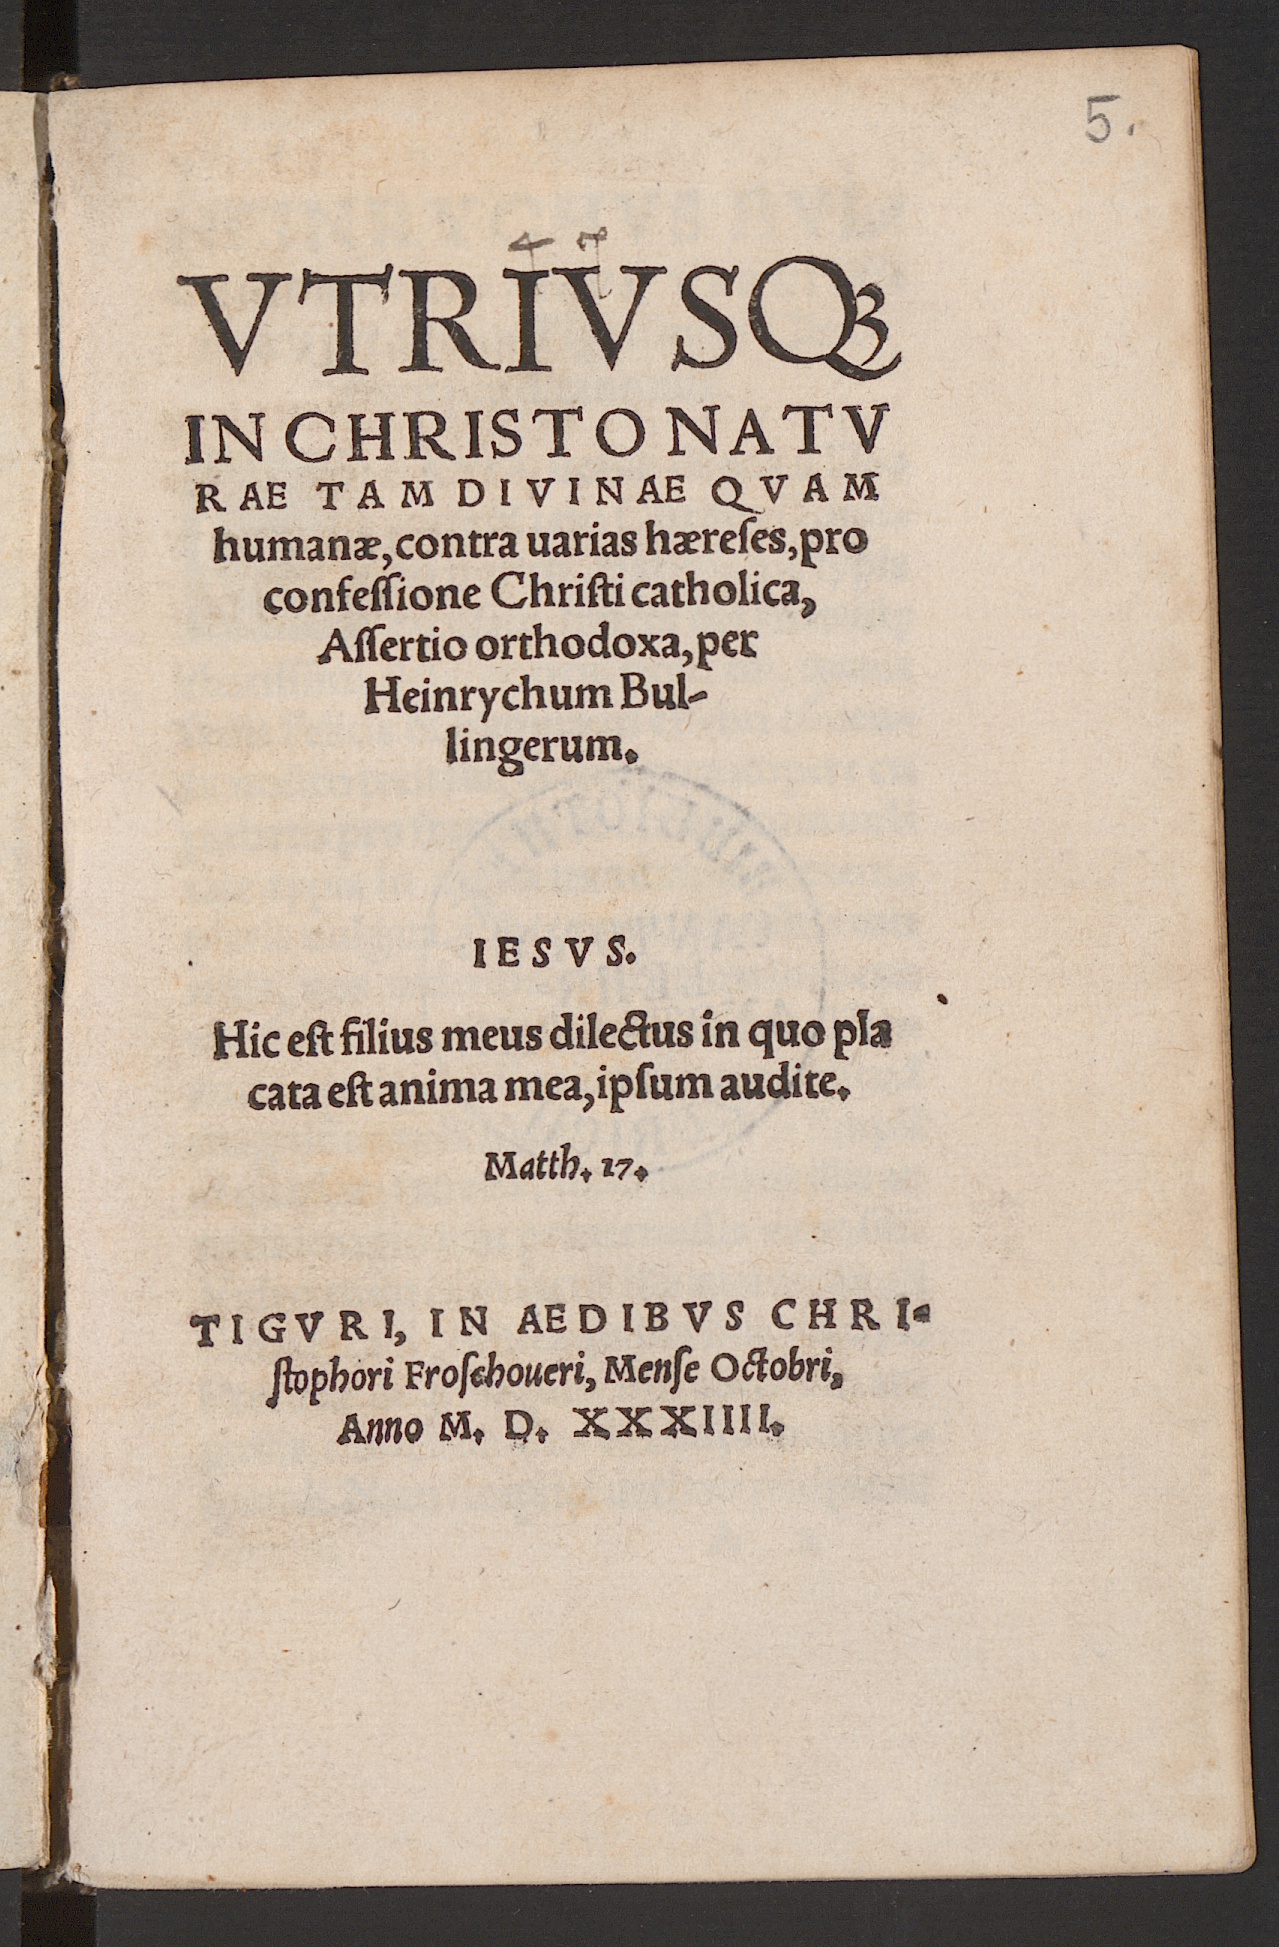 Titel Heinrich Bullinger, Assertio utriusque in Christo naturae